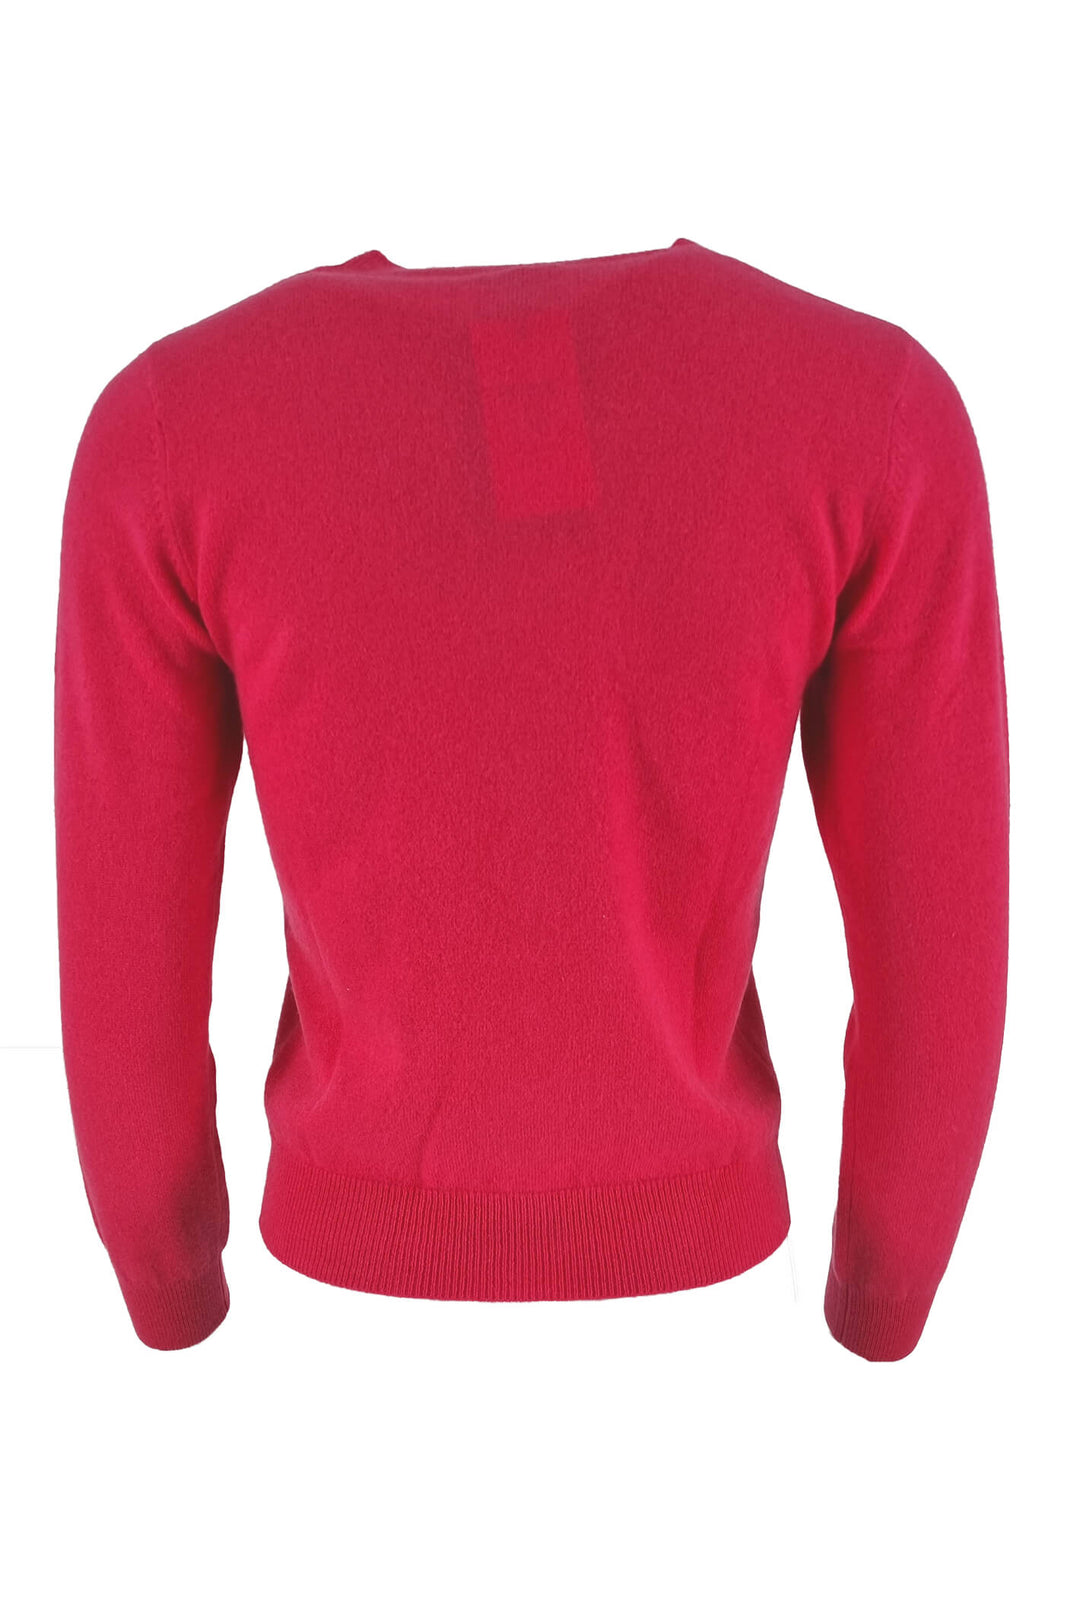 Estheme Cashmere WES2114H 2916 Pink Colour Buttons Cardigan - Shirley Allum Boutique